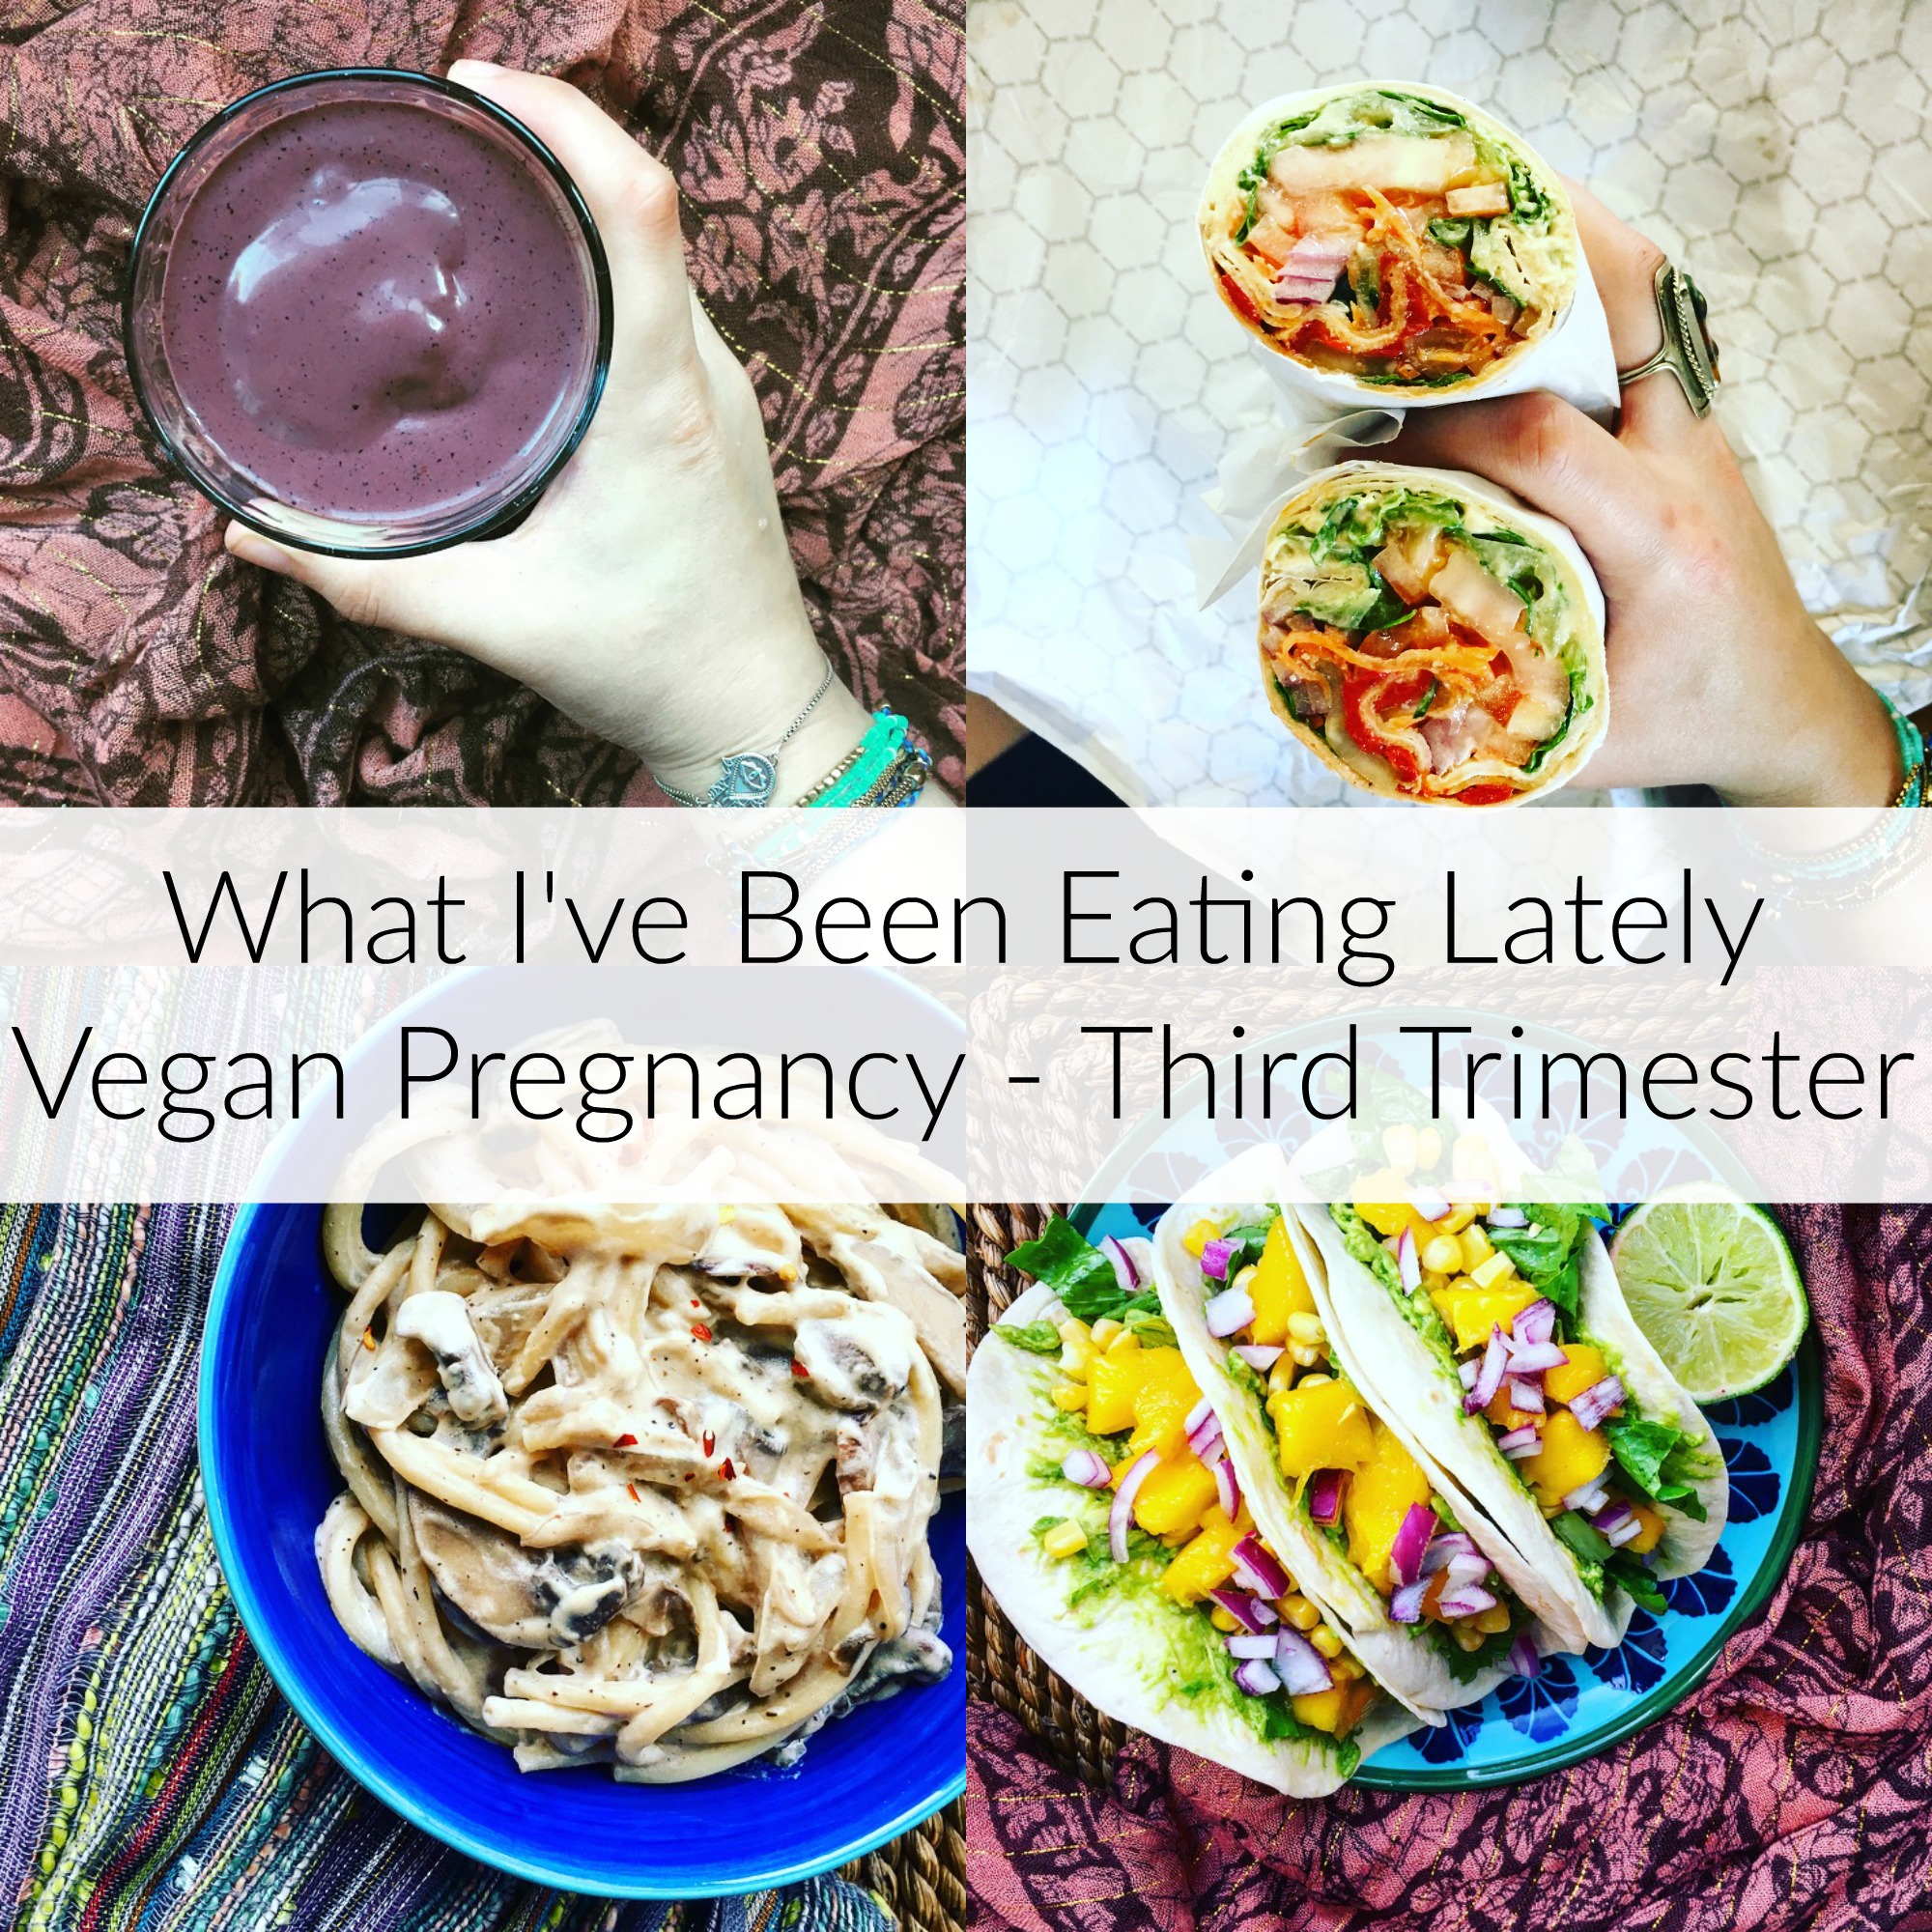 Pregnant Vegan Meals - Third Trimester